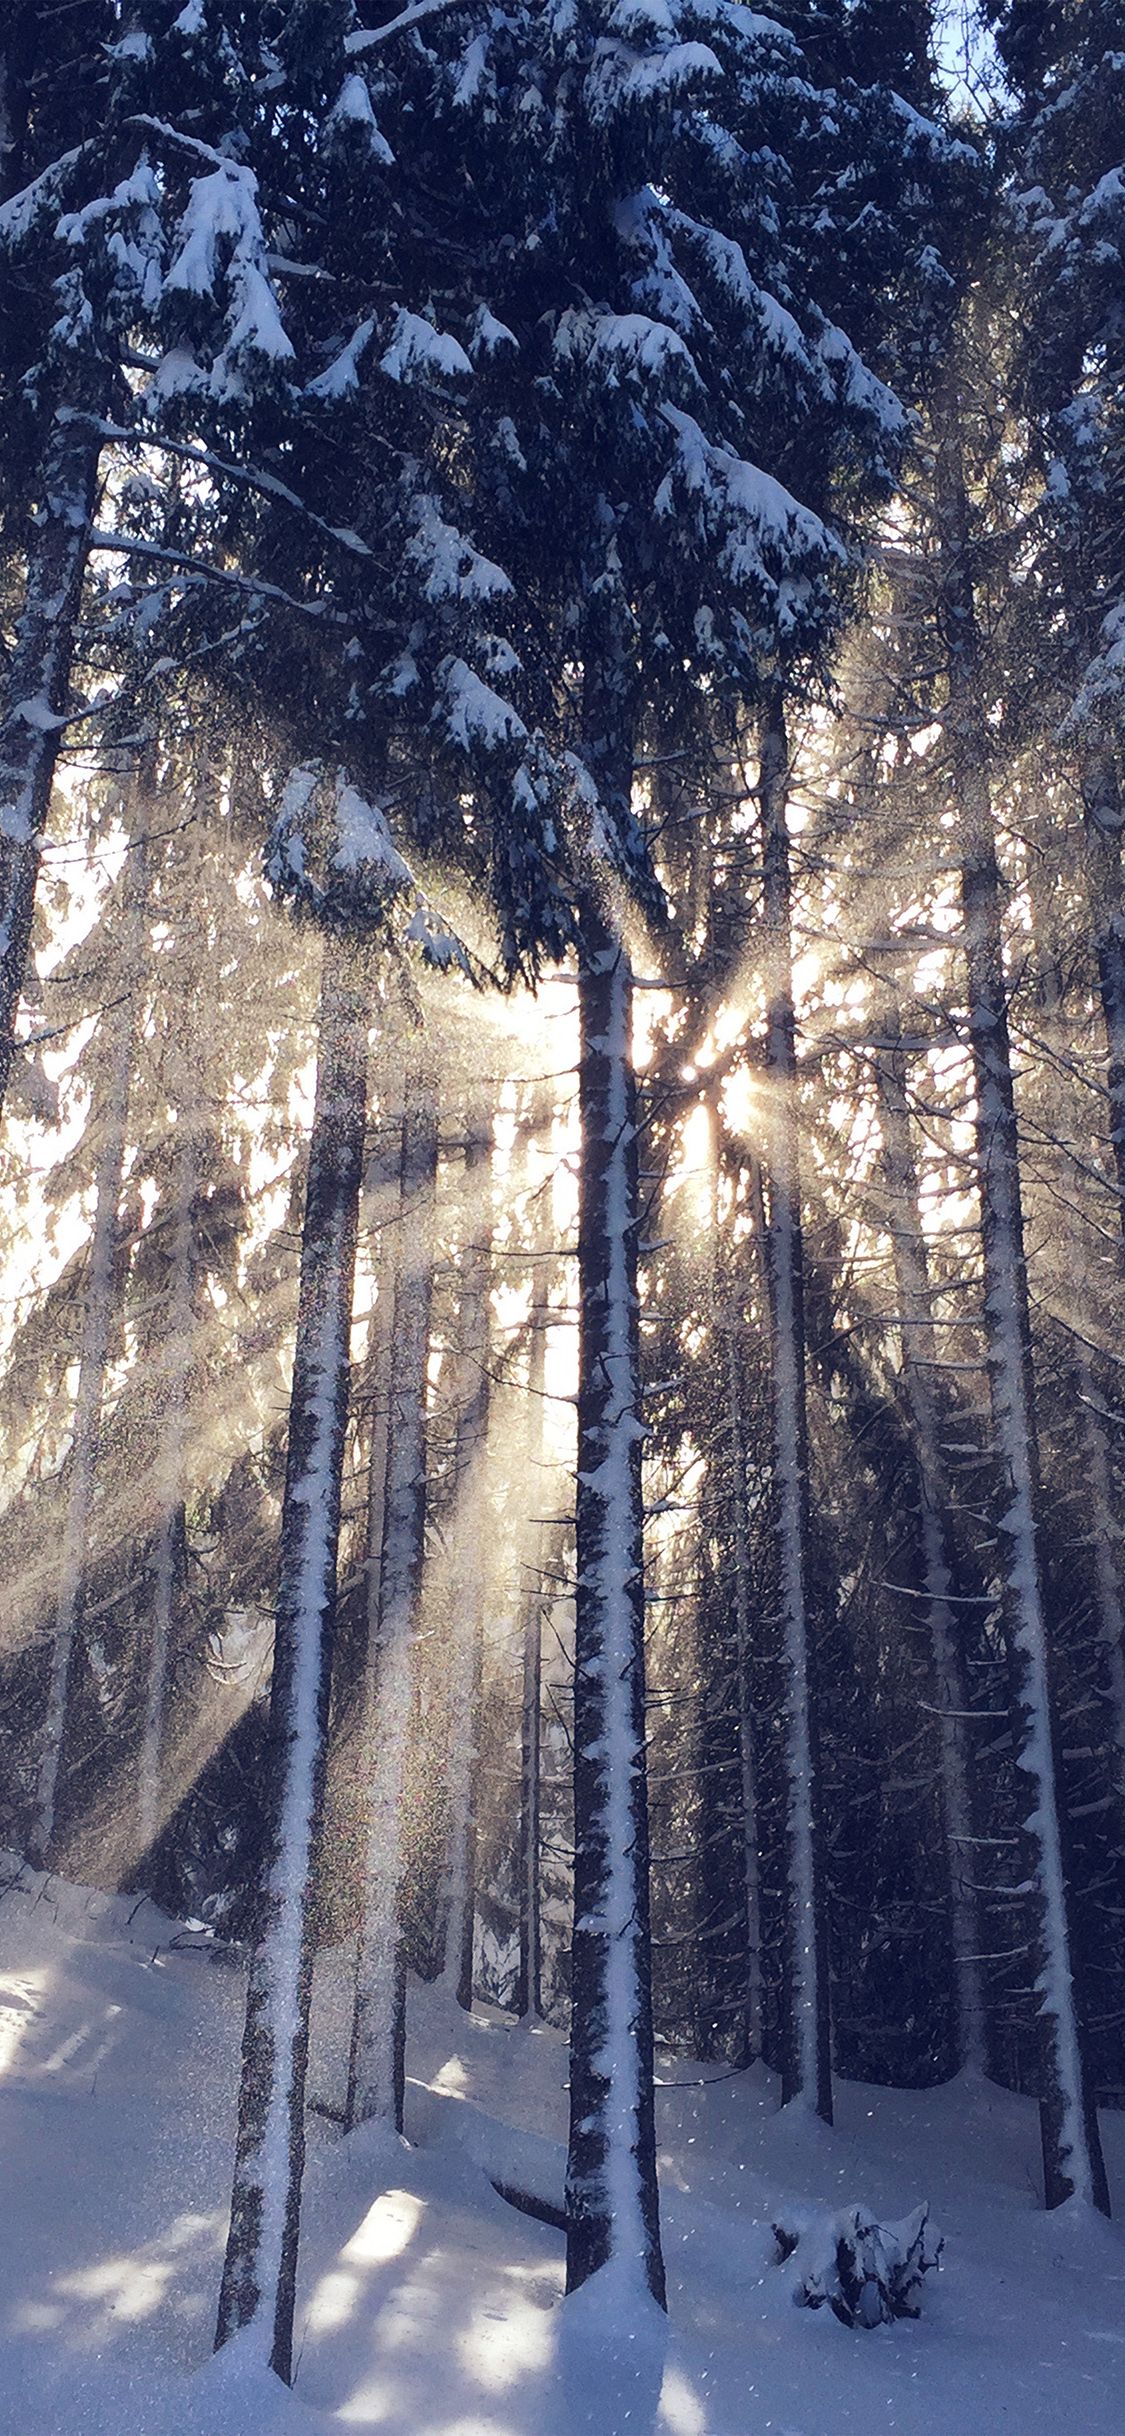 iPhone X wallpaper. wood snow winter light sun nature blue